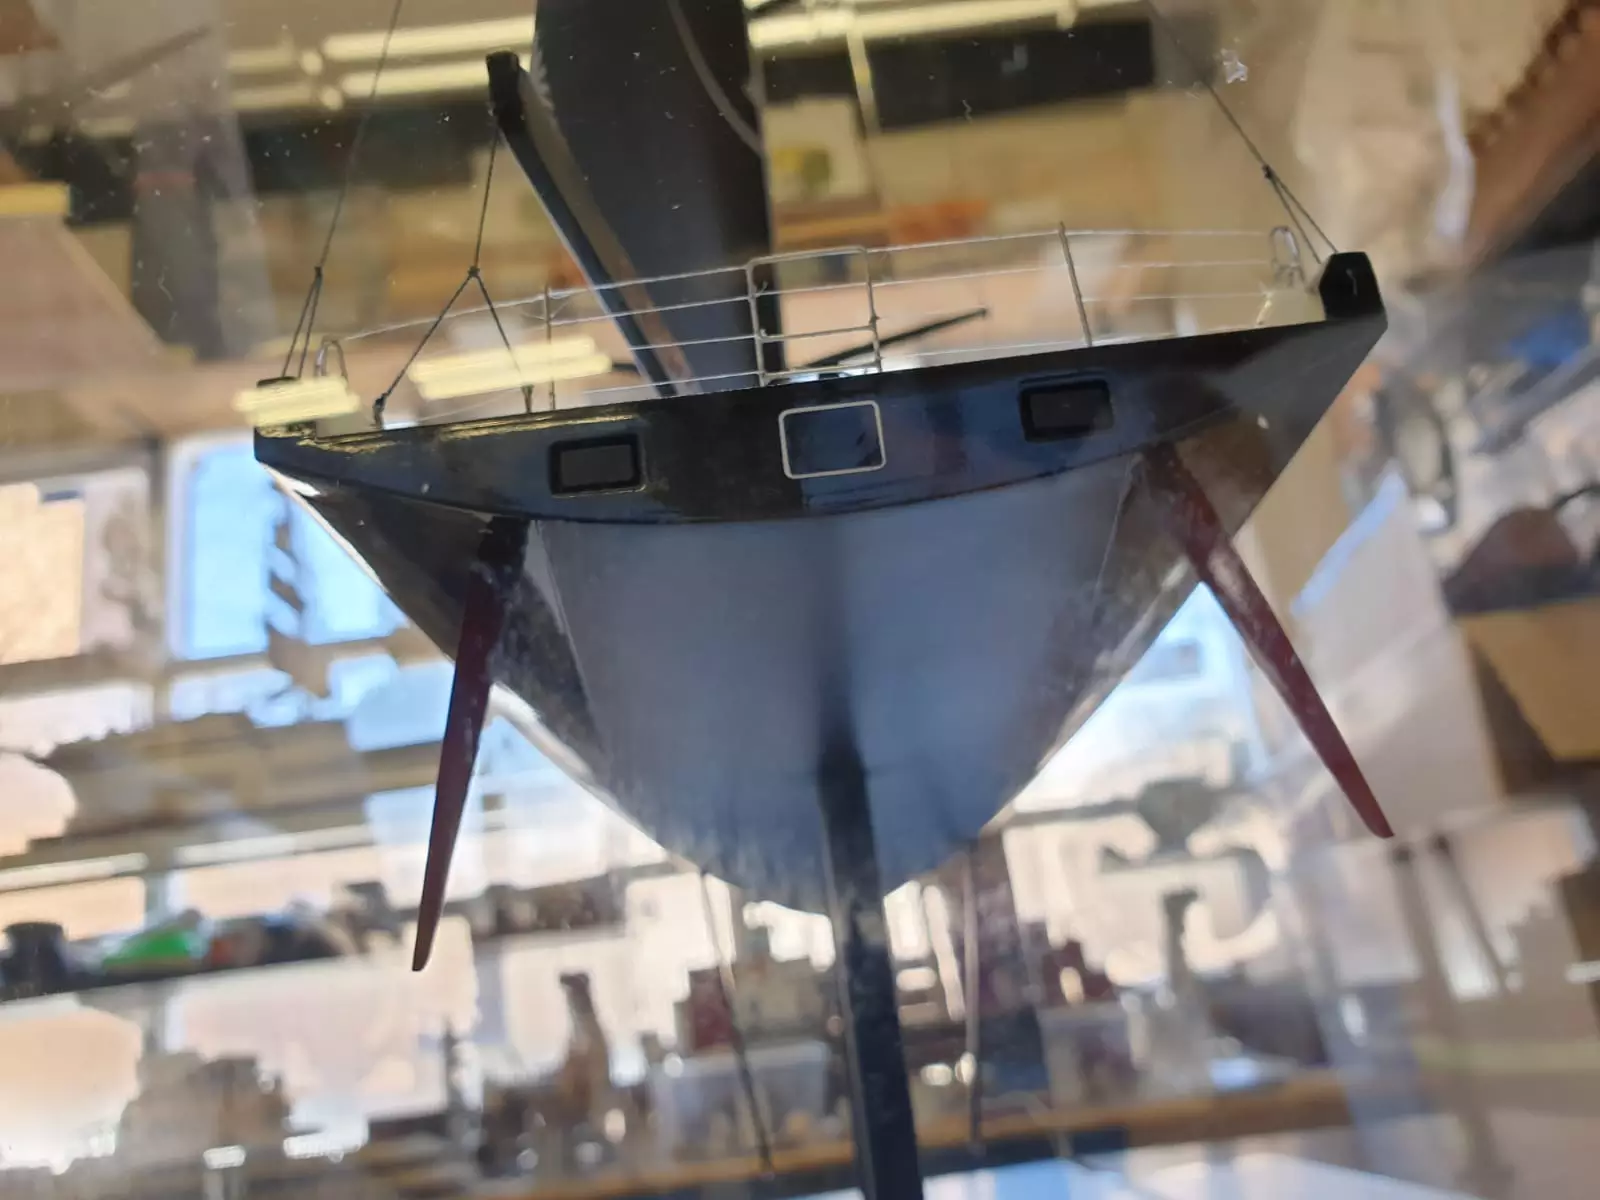 Comanche Model Yacht